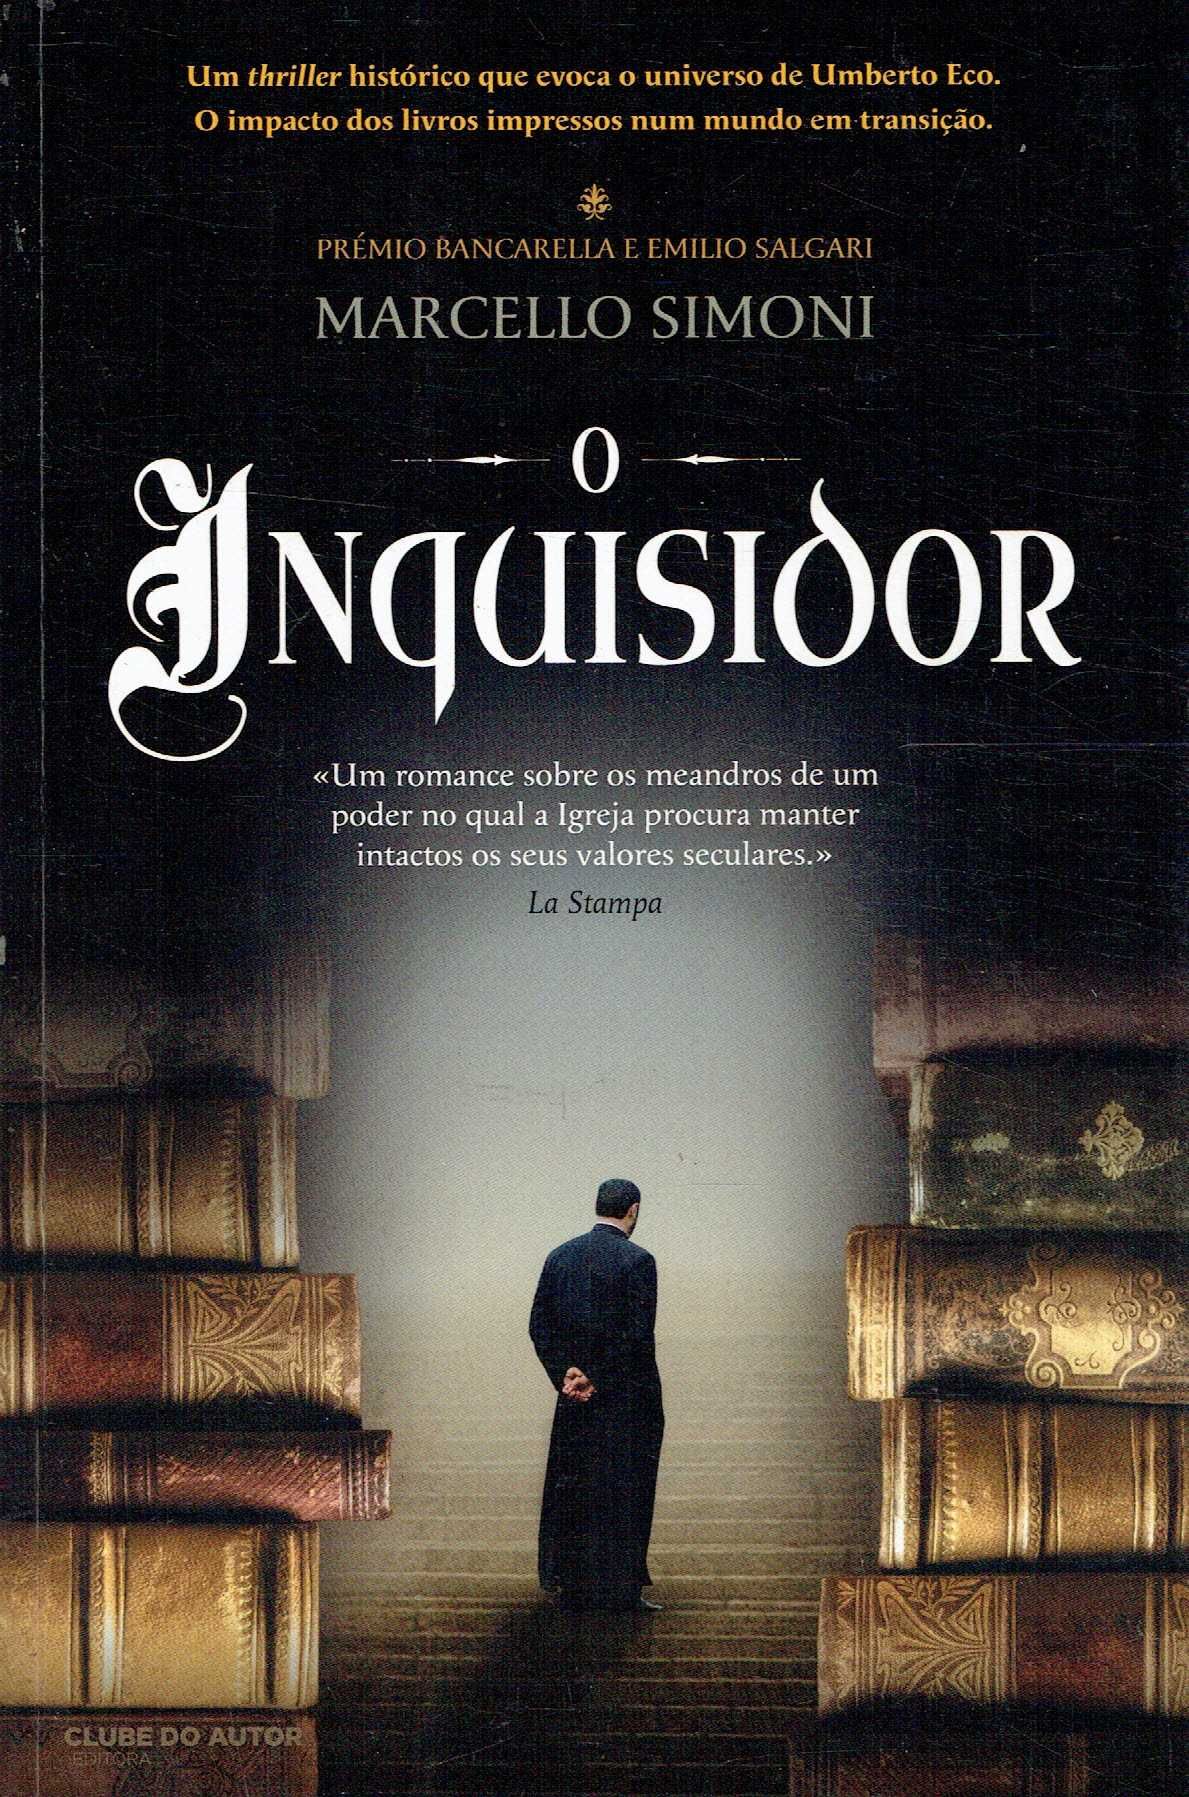 14370

O Inquisidor
de Marcello Simoni